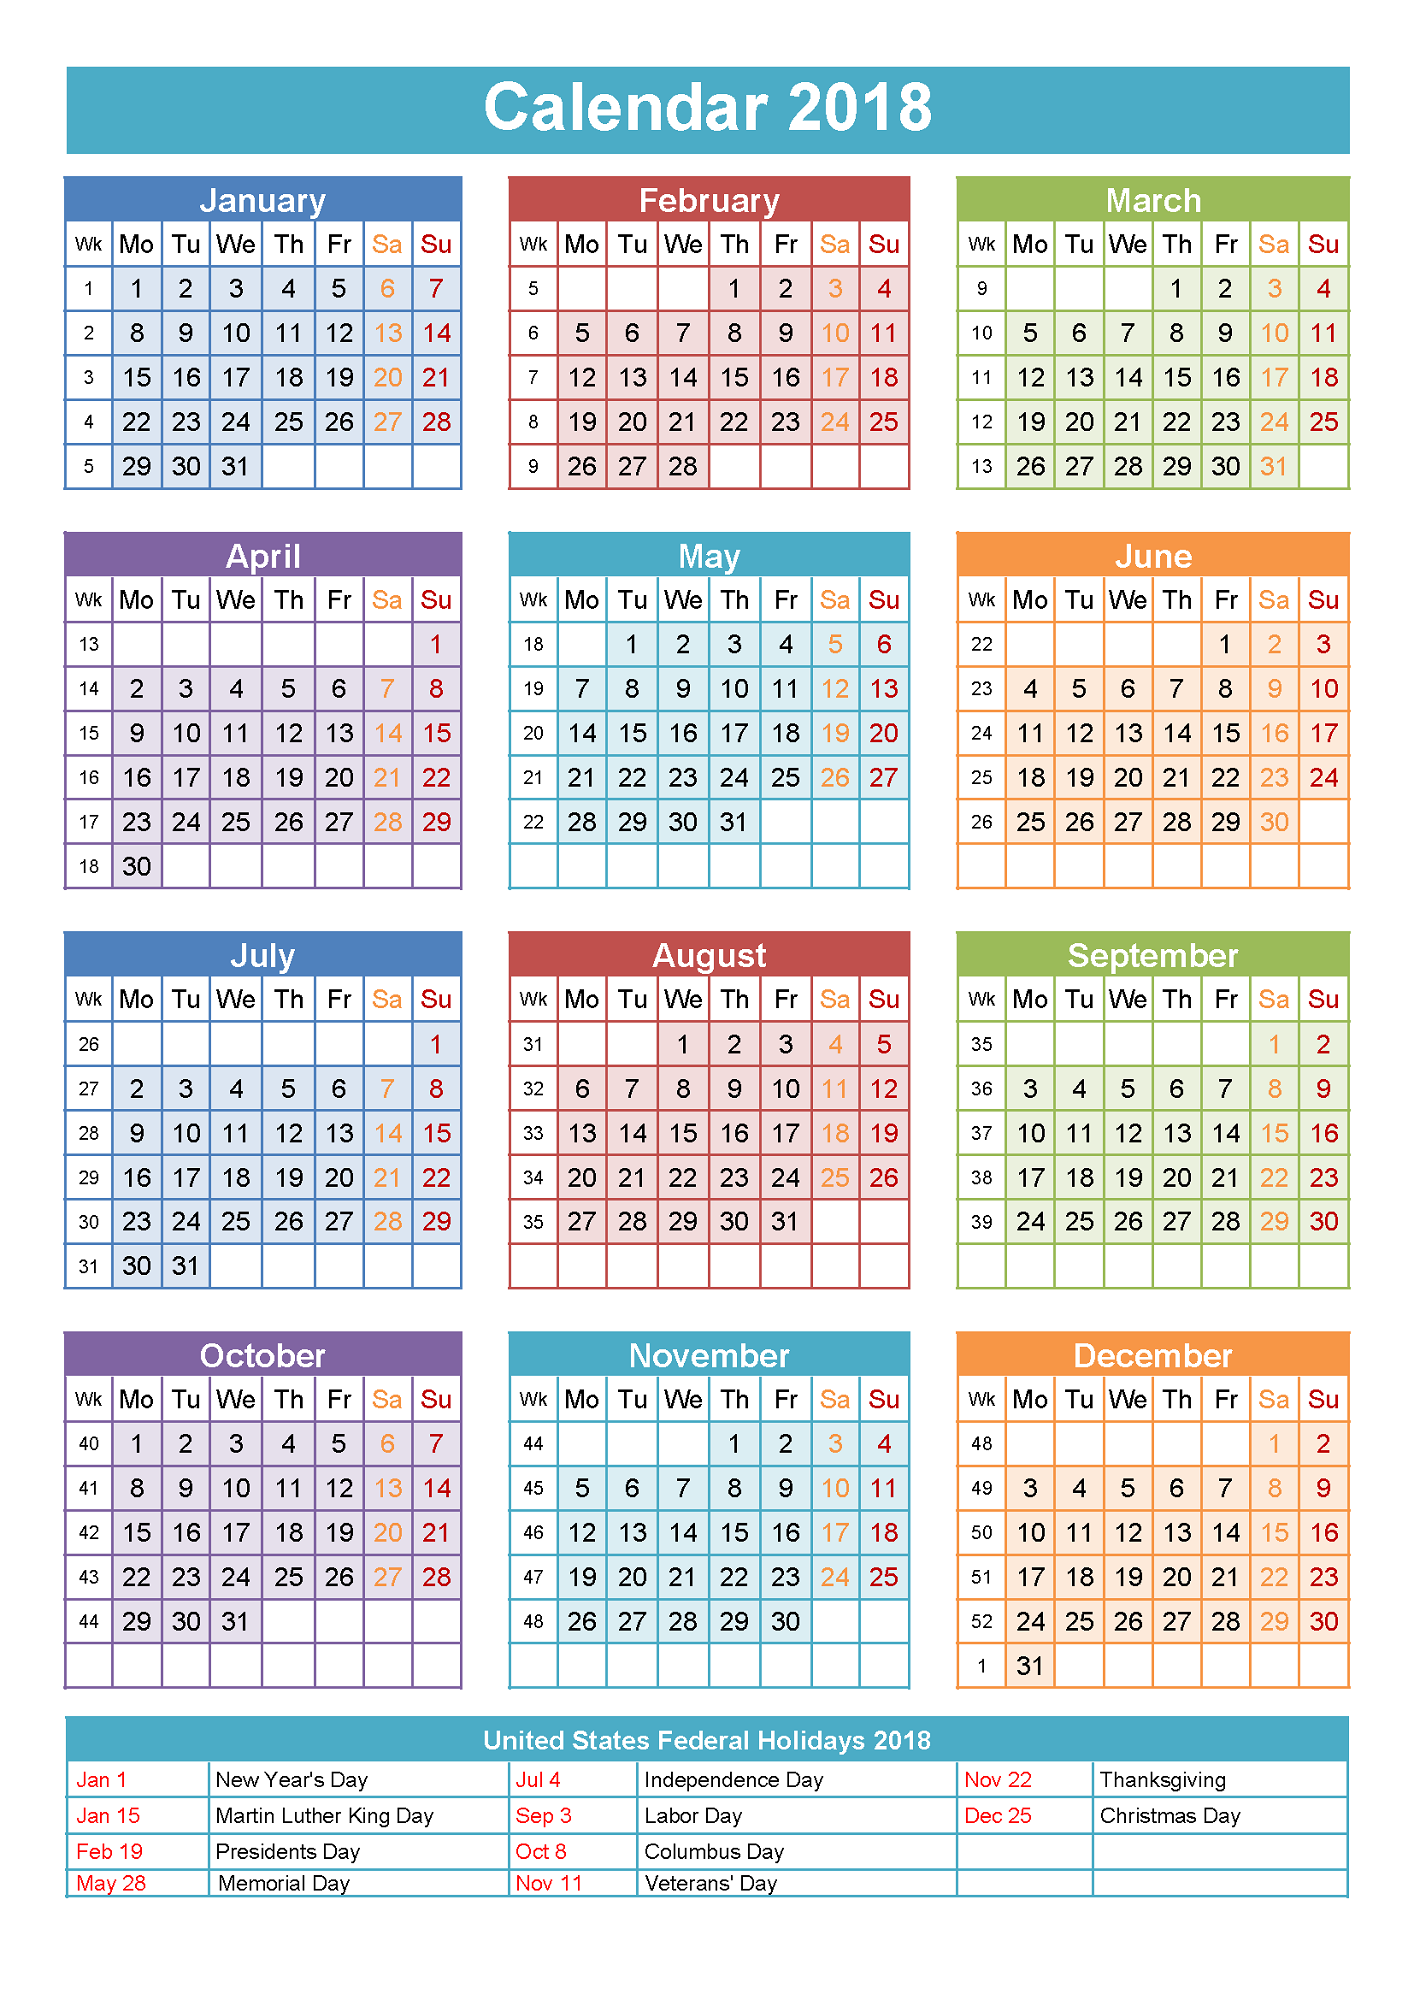 btc calendar holiday 2018 2019